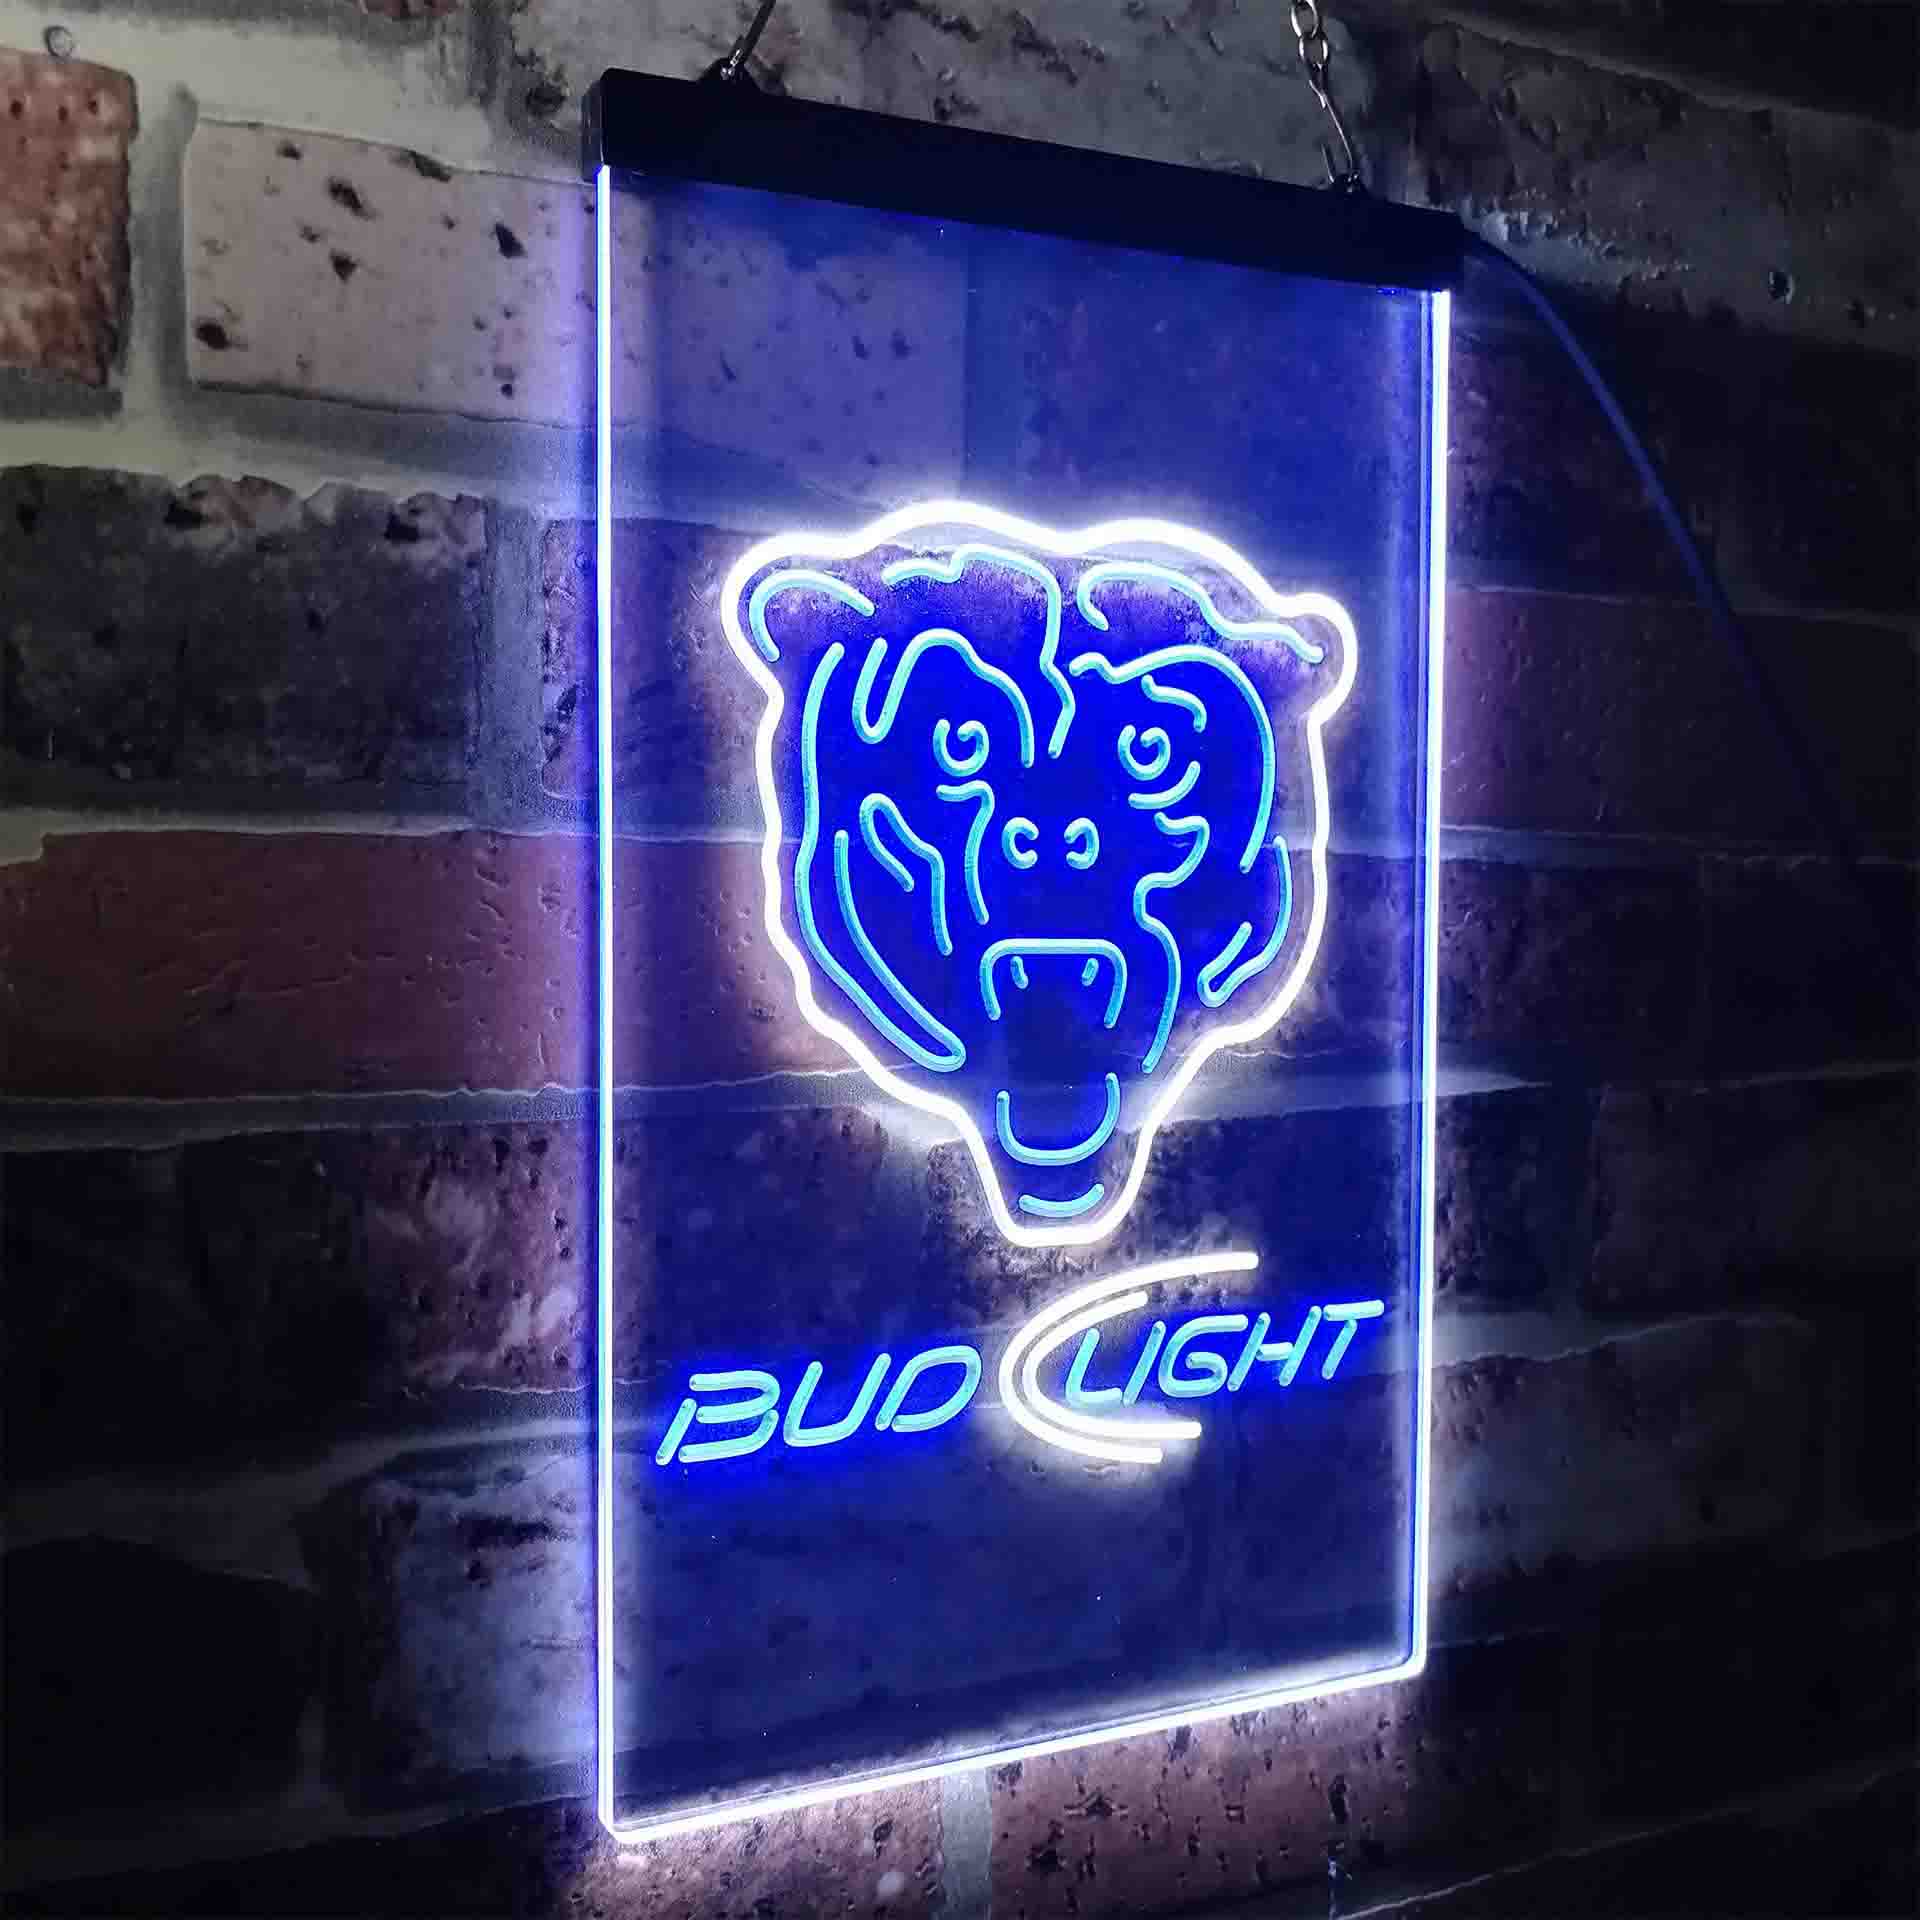 Chicago Bears Bud Light Neon-Like LED Sign